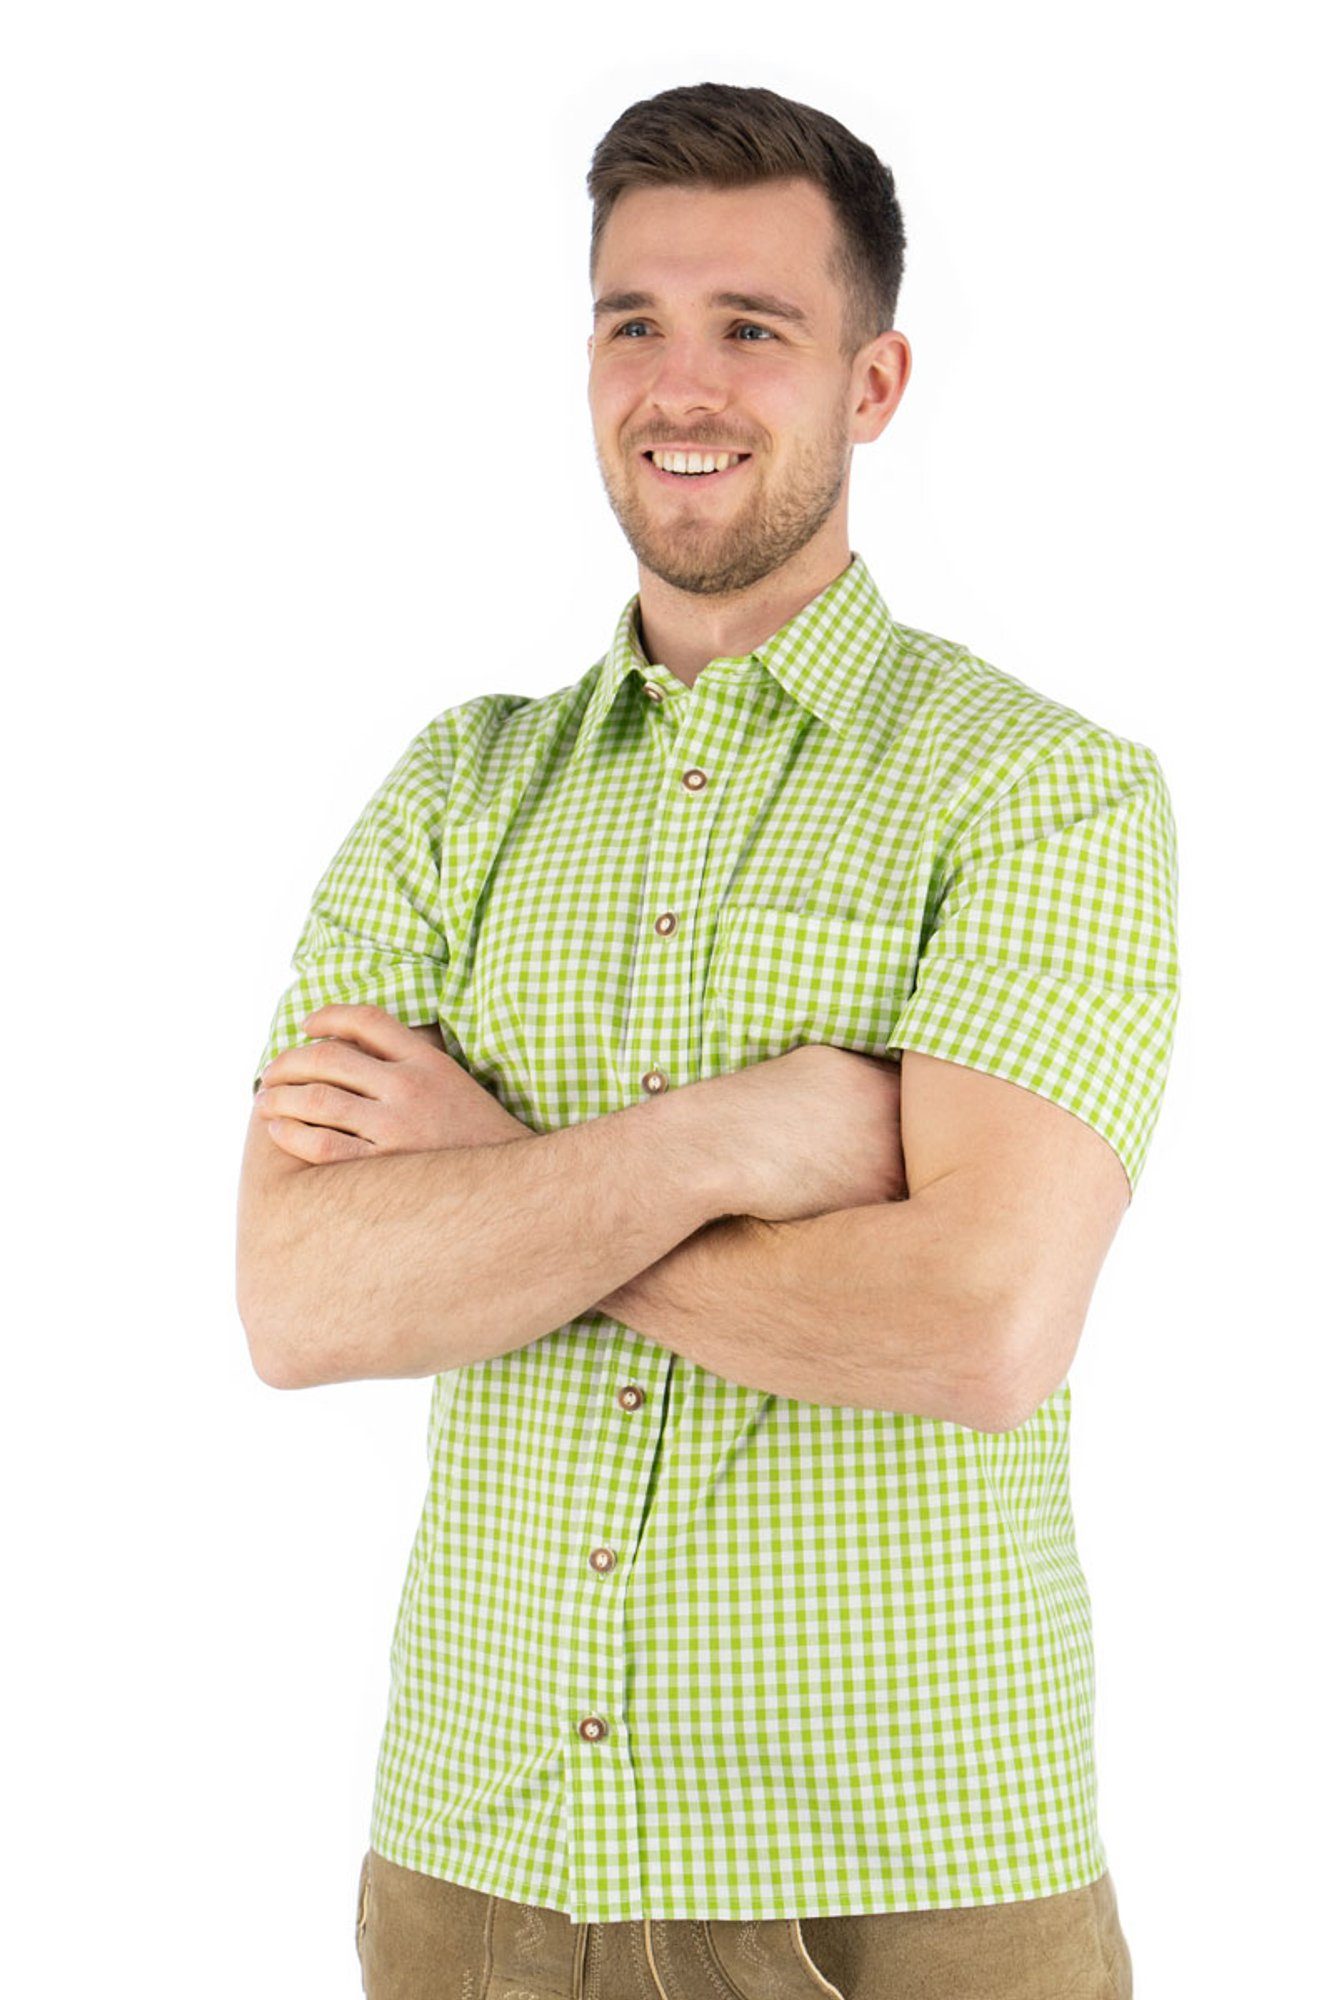 mit Zihul aufgesetzter Hirsch-Stickerei Kurzarmhemd Brusttasche Trachtenhemd OS-Trachten mit giftgrün